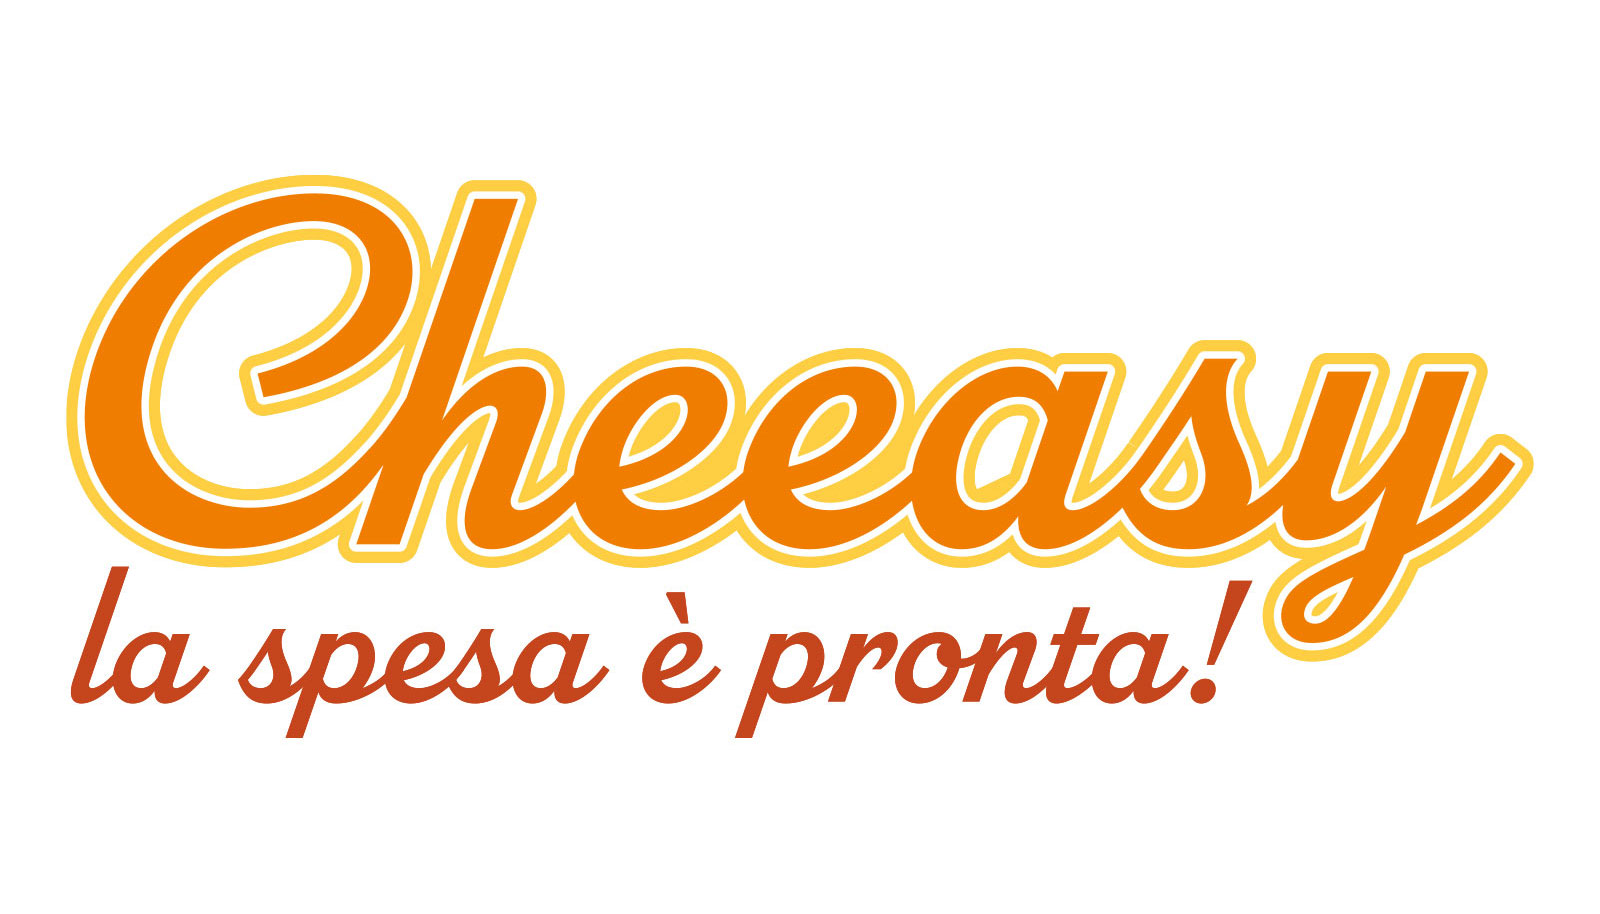 logo cheeasy web app per vendita formaggi